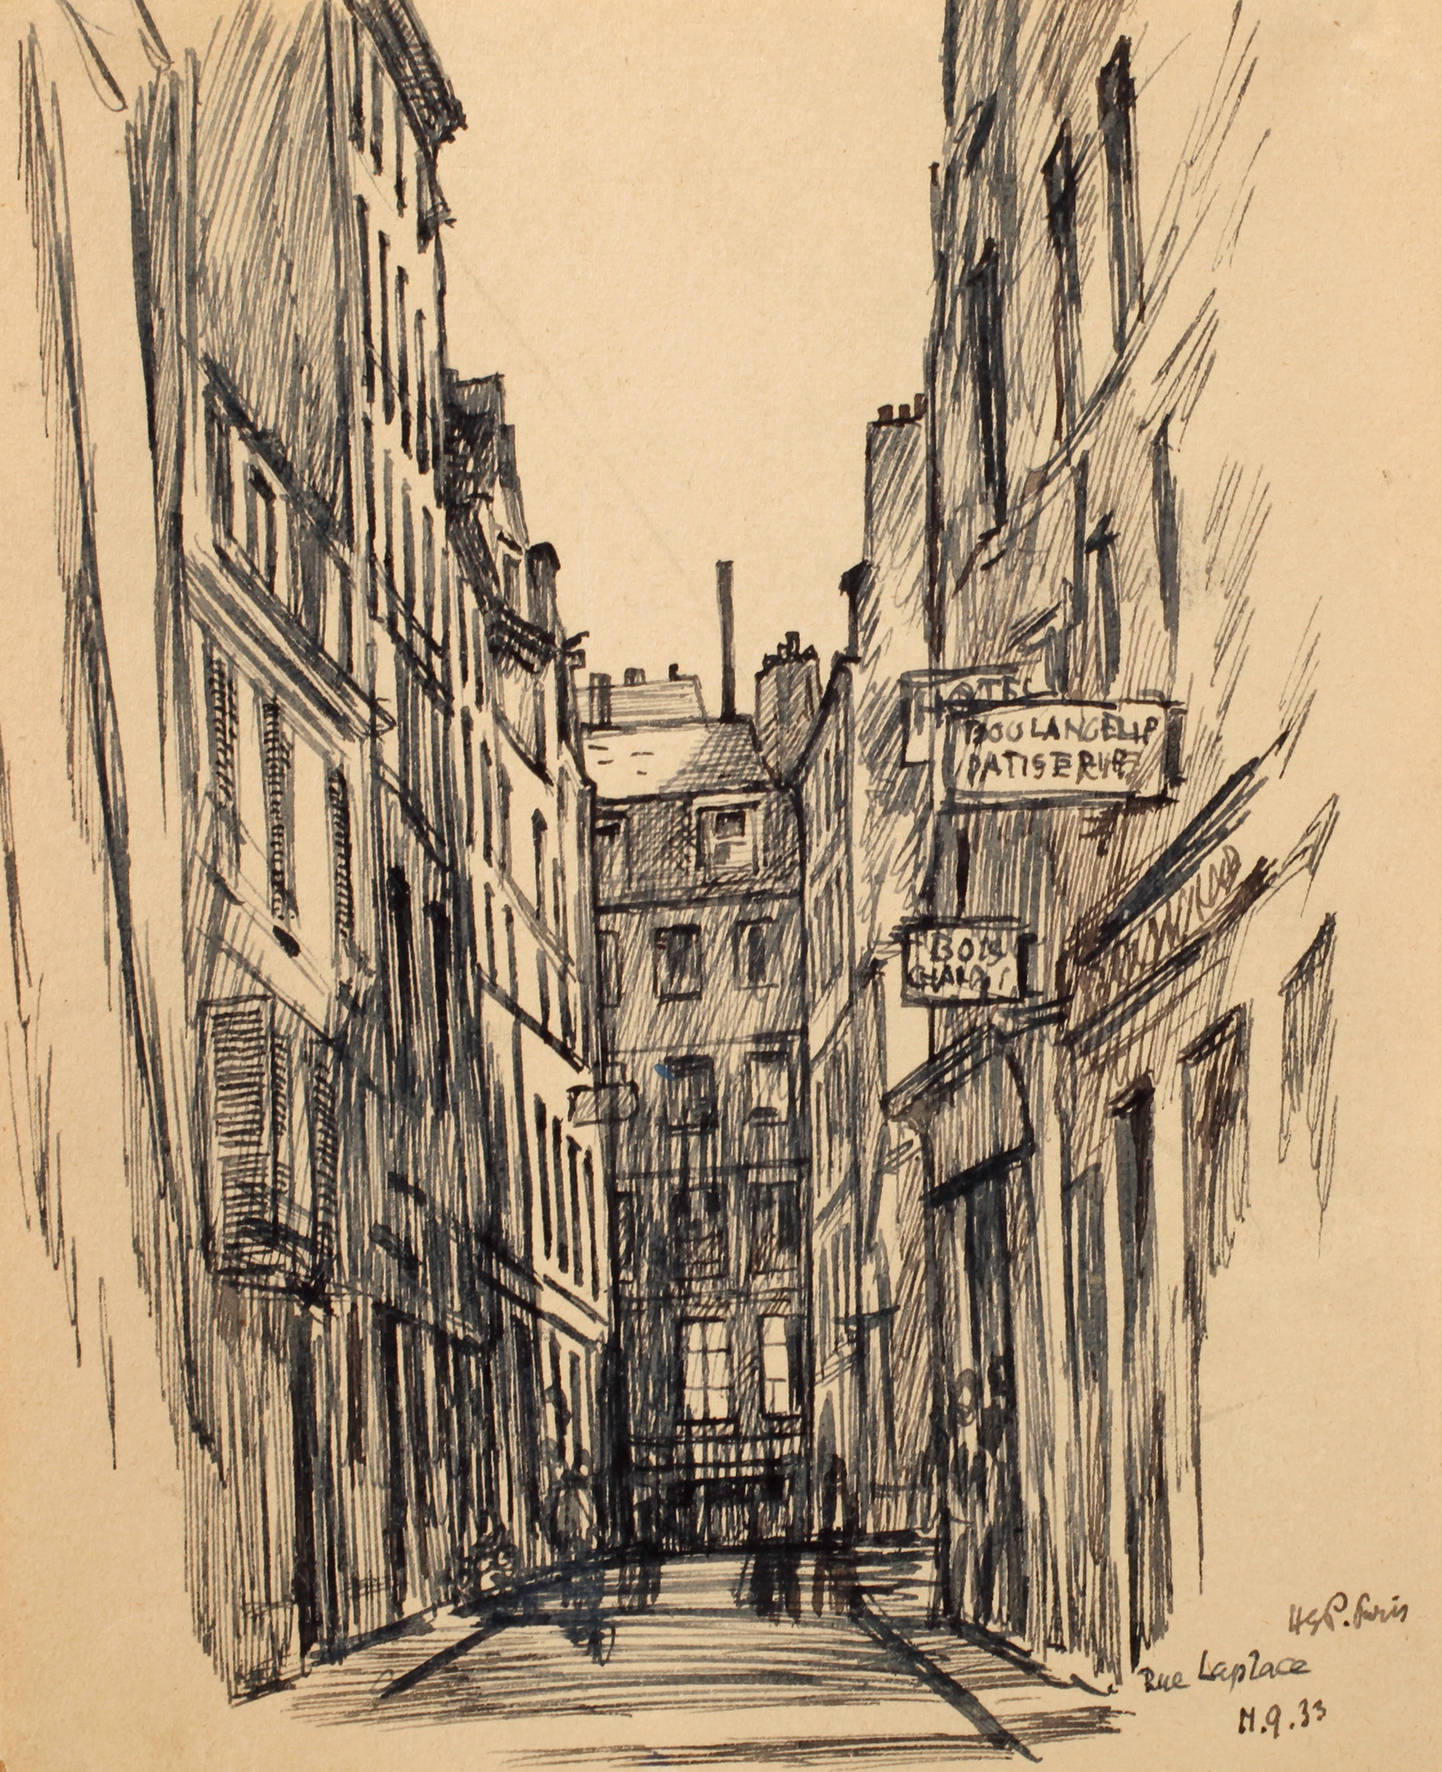 Prof. Hugo Steiner-Prag, ”Rue laplace Paris”